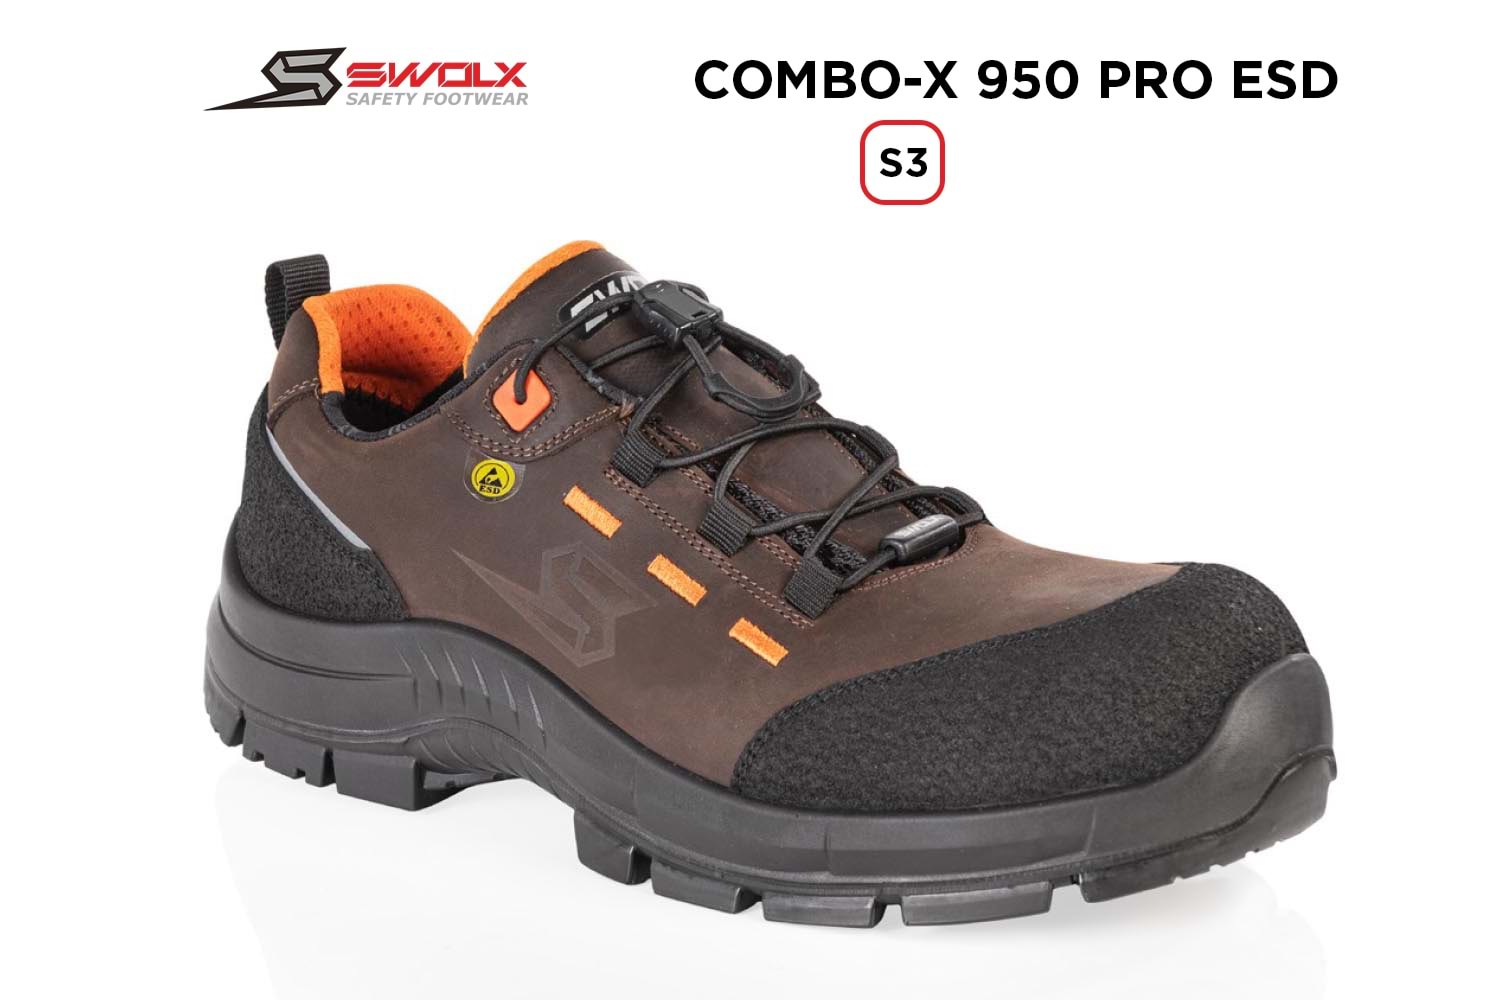 Swolx İş Ayakkabısı - Combo-X Pro Esd 950 S3 - 42